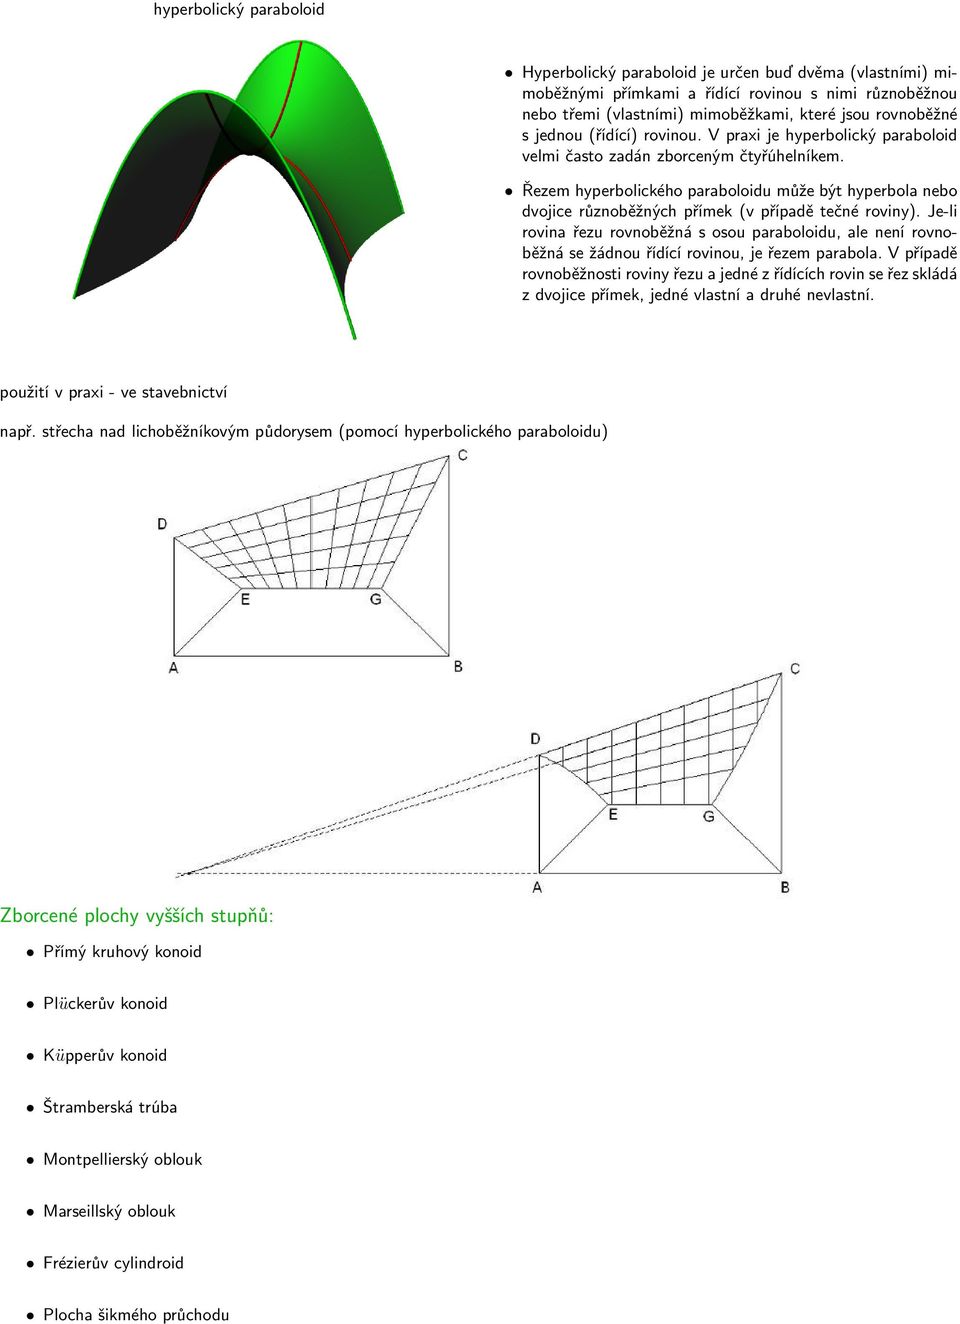 Řezem hyperbolického paraboloidu může být hyperbola nebo dvojice různoběžných přímek (v případě tečné roviny).